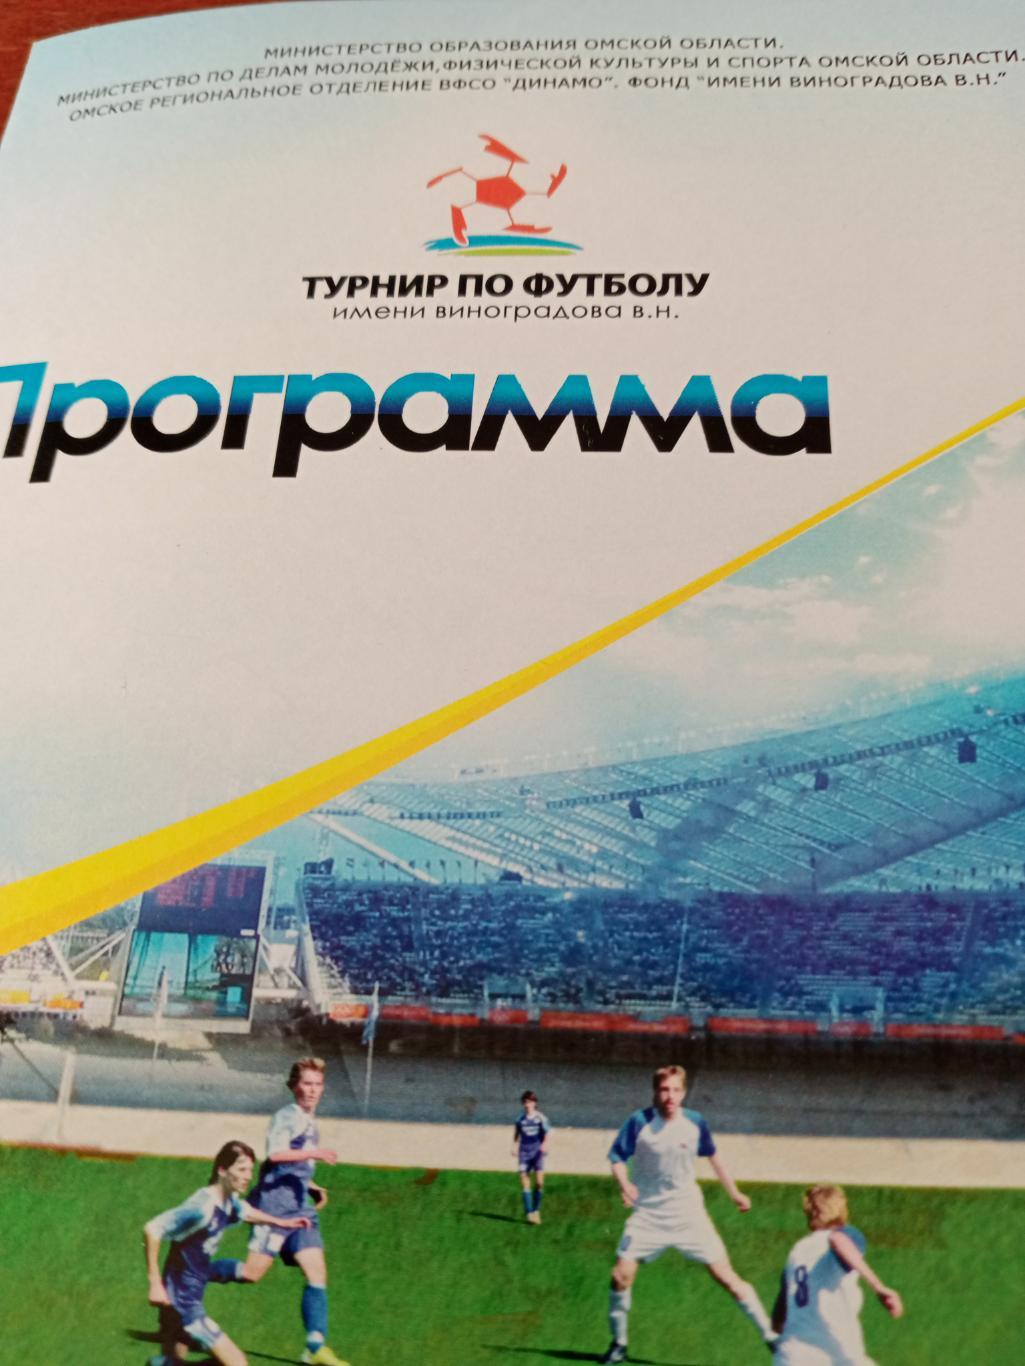 11-й юношеский турнир по футболу имени В.Виноградова. Омск - 2014 год